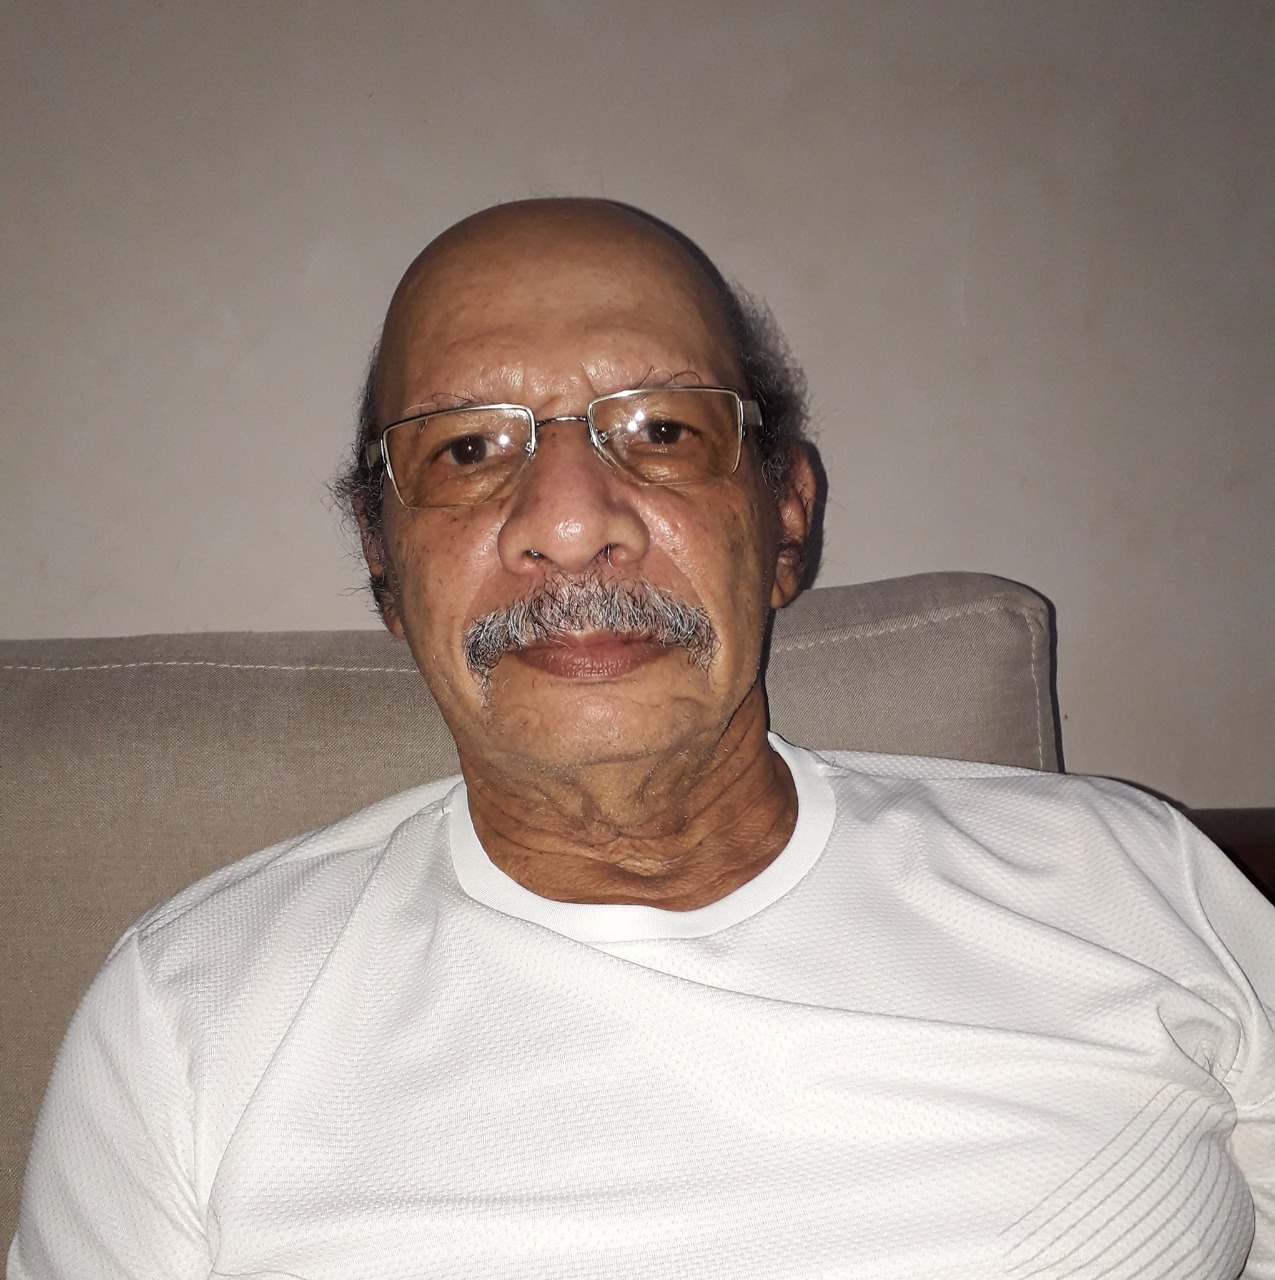 TRISTEZA: Família comunica o falecimento do senhor Vilson Francisco